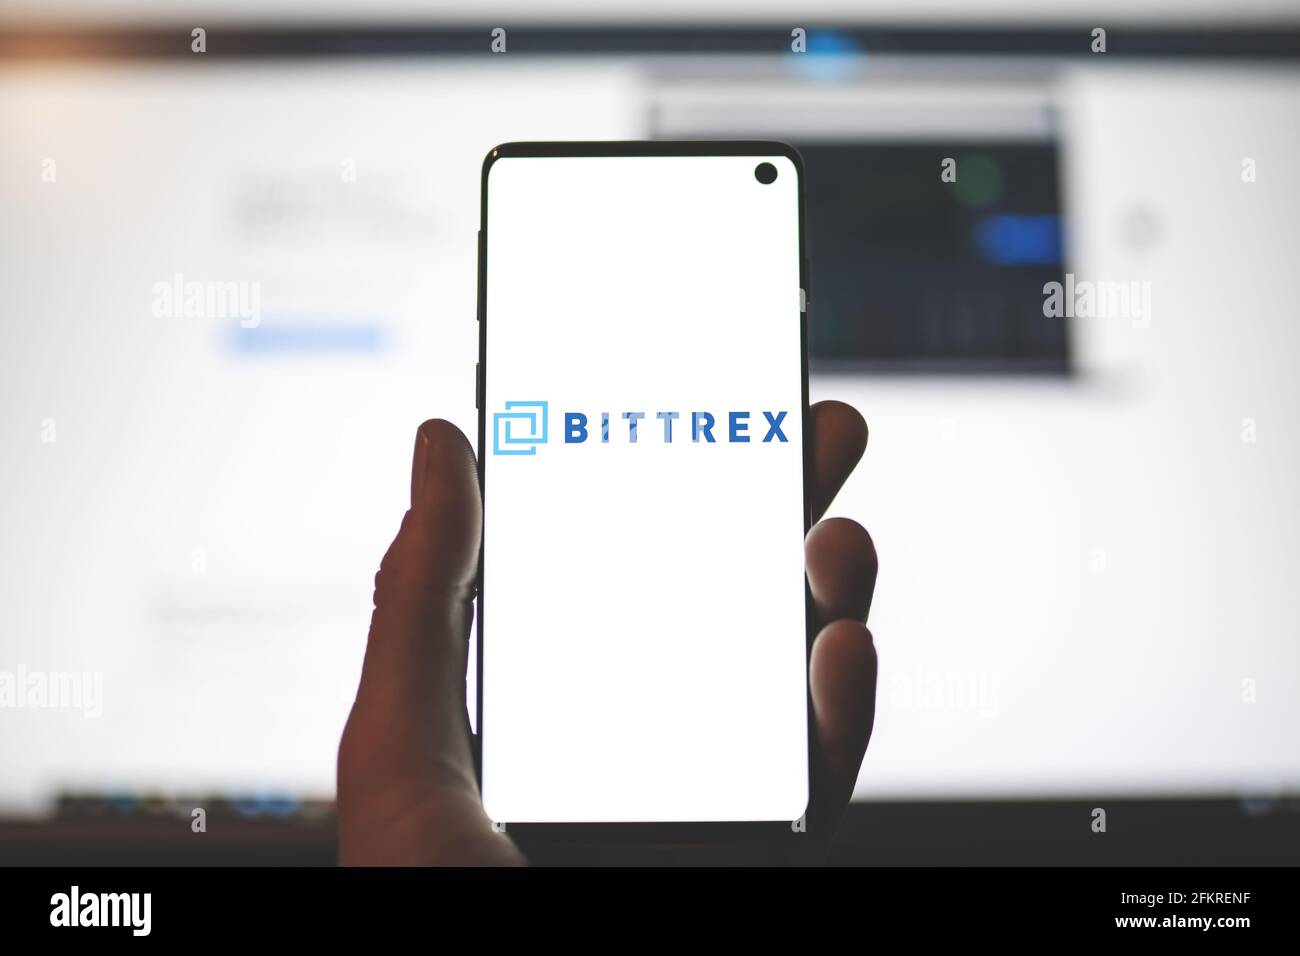 SWANSEA, Royaume-Uni - 1 MAI 2021: Homme tenant un smartphone avec le logo de l'application Bittrex avec un arrière-plan flou de site Web. Bourse de crypto-monnaies, plate-forme de négociation Banque D'Images